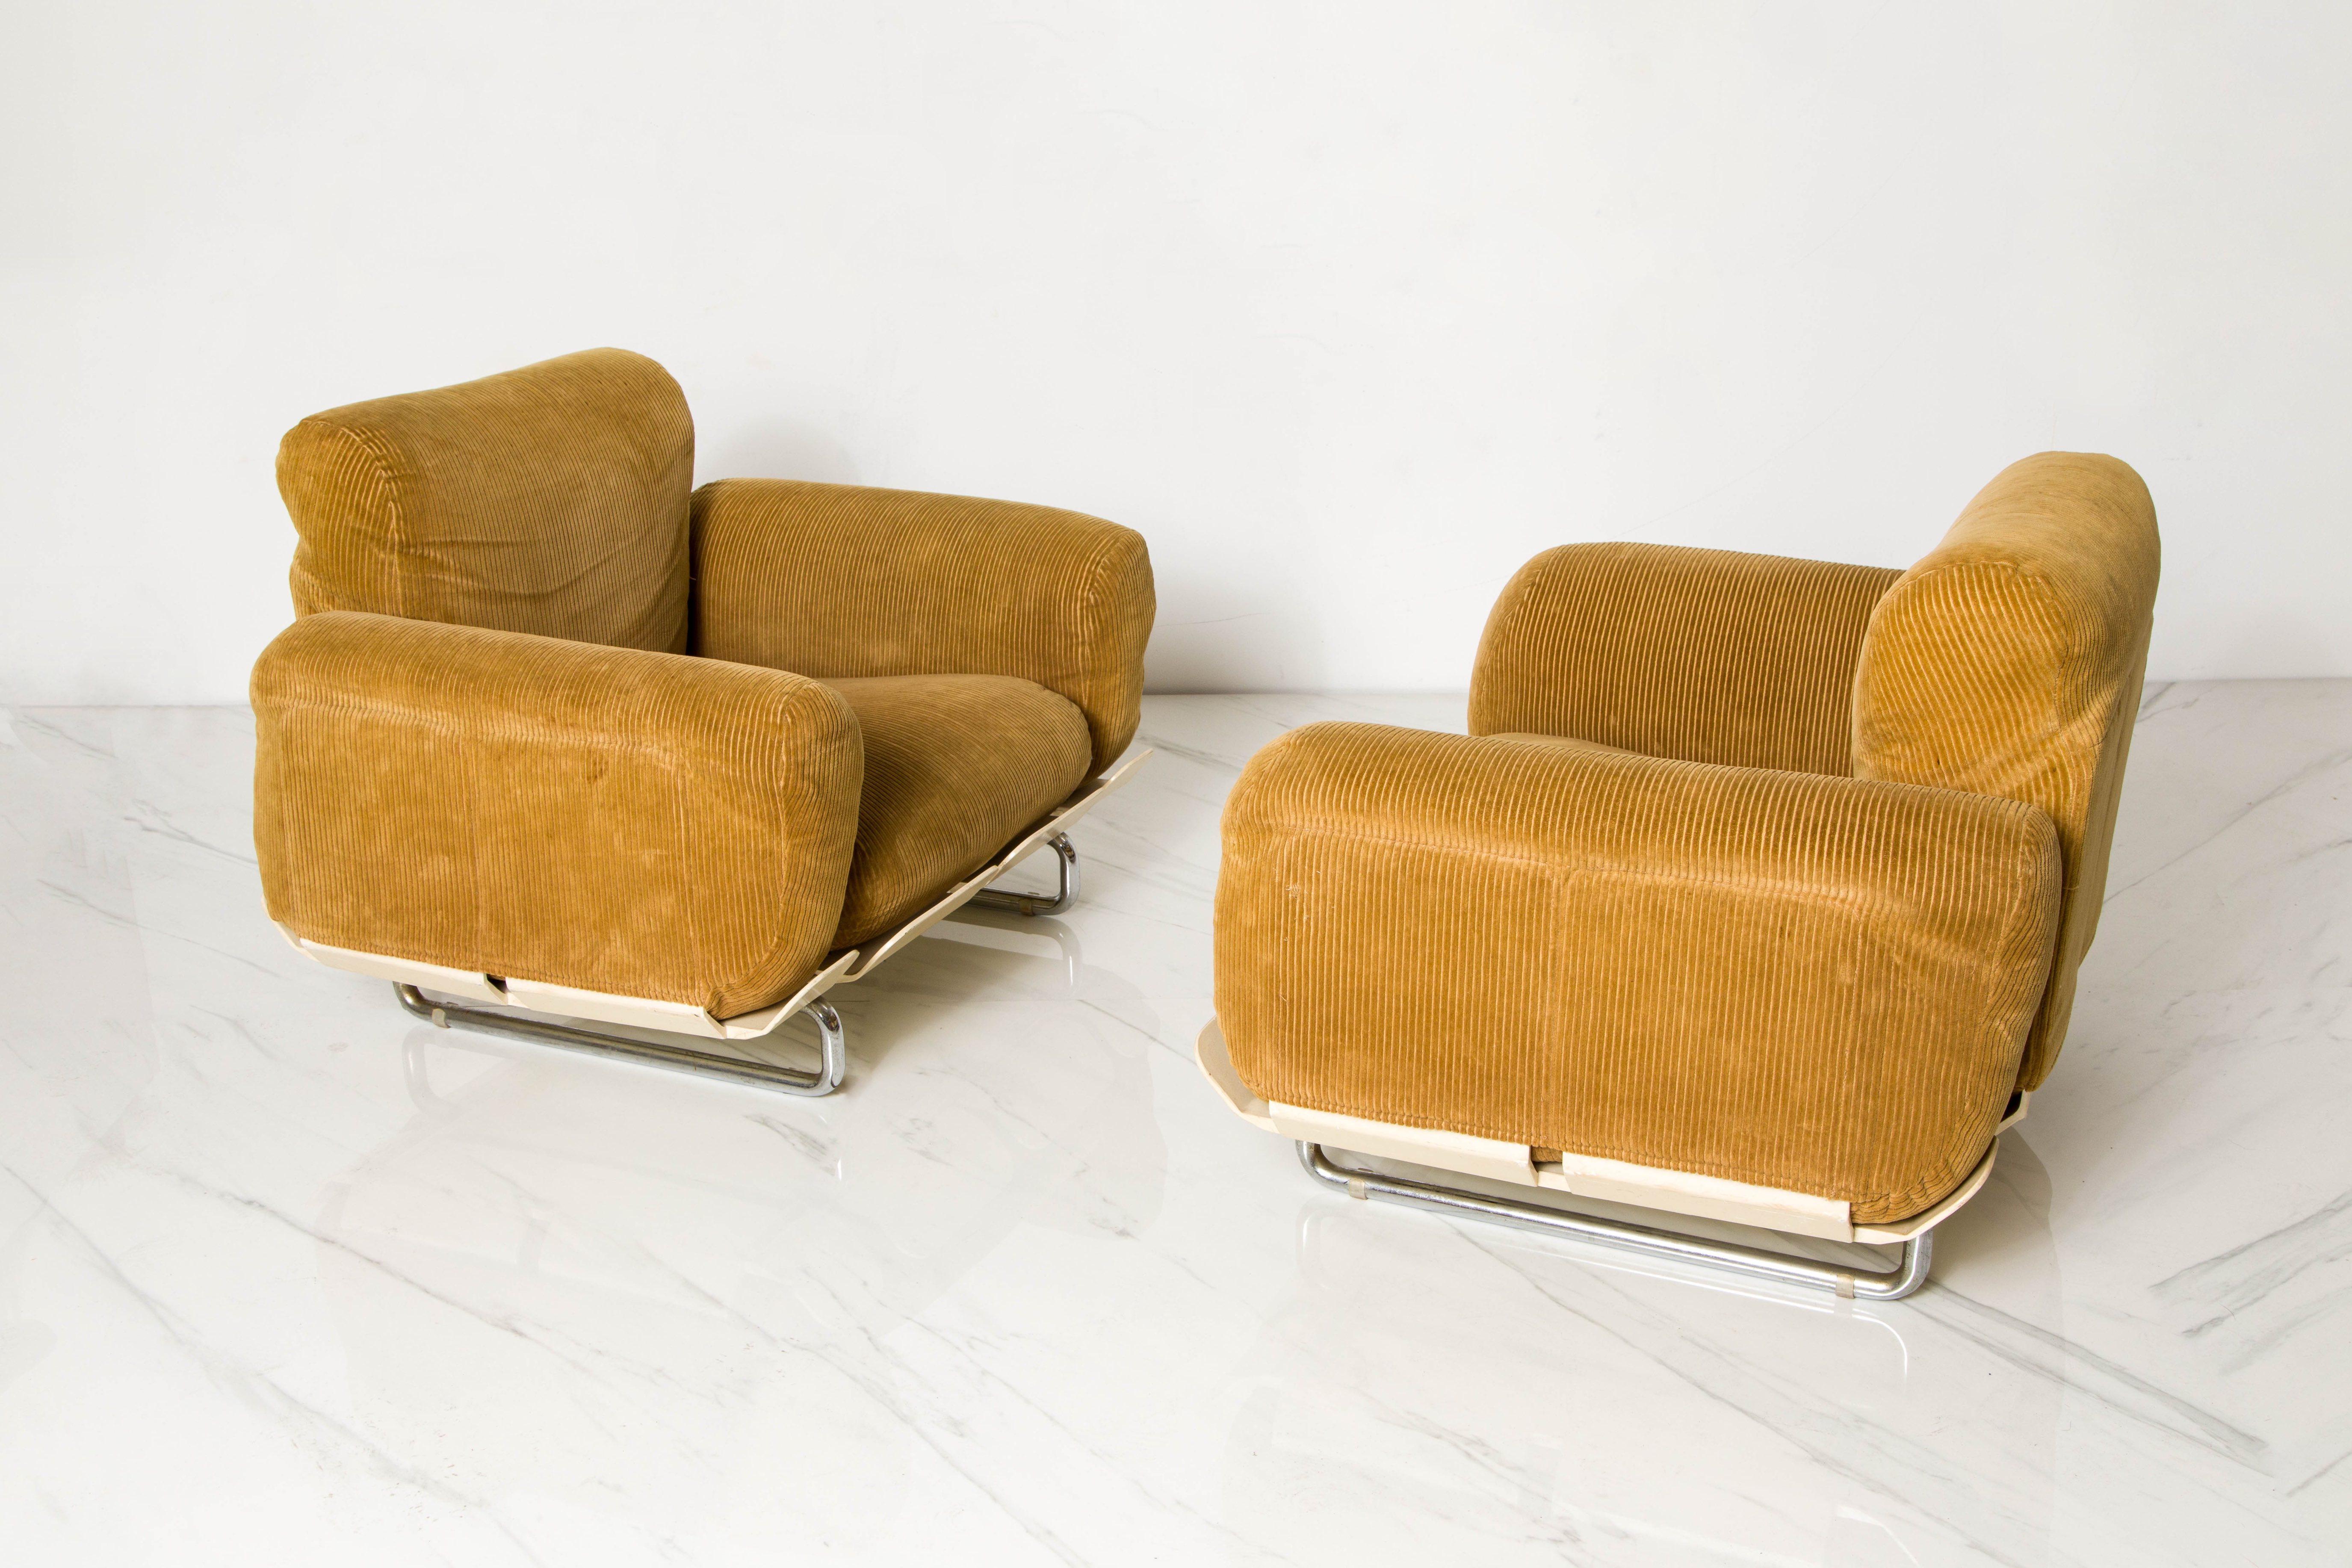 Rare 'Senzafine' Lounge Chairs by Eleonore Riva for Zanotta, 1969, Signed 1